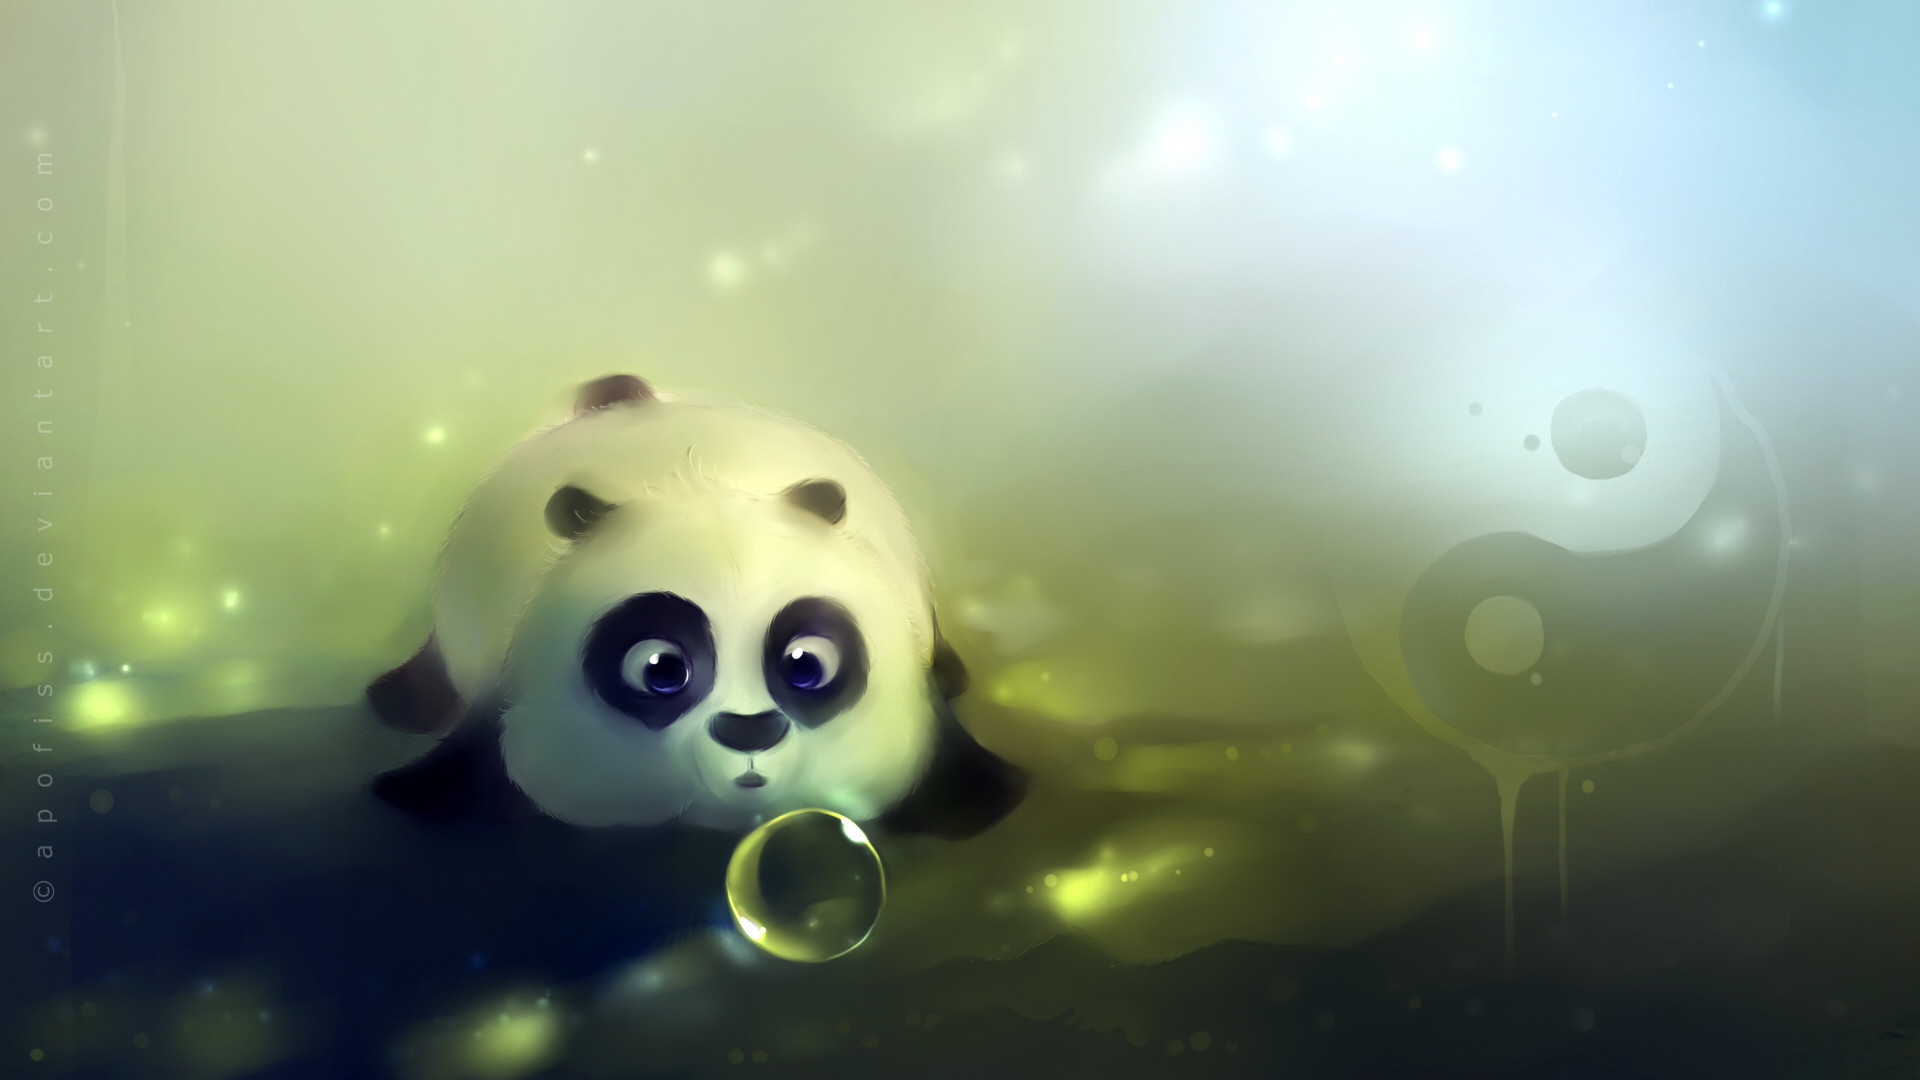 1920x1080 panda wallpaper - Google Search Â· Baby PandasBaby OwlsCute ...